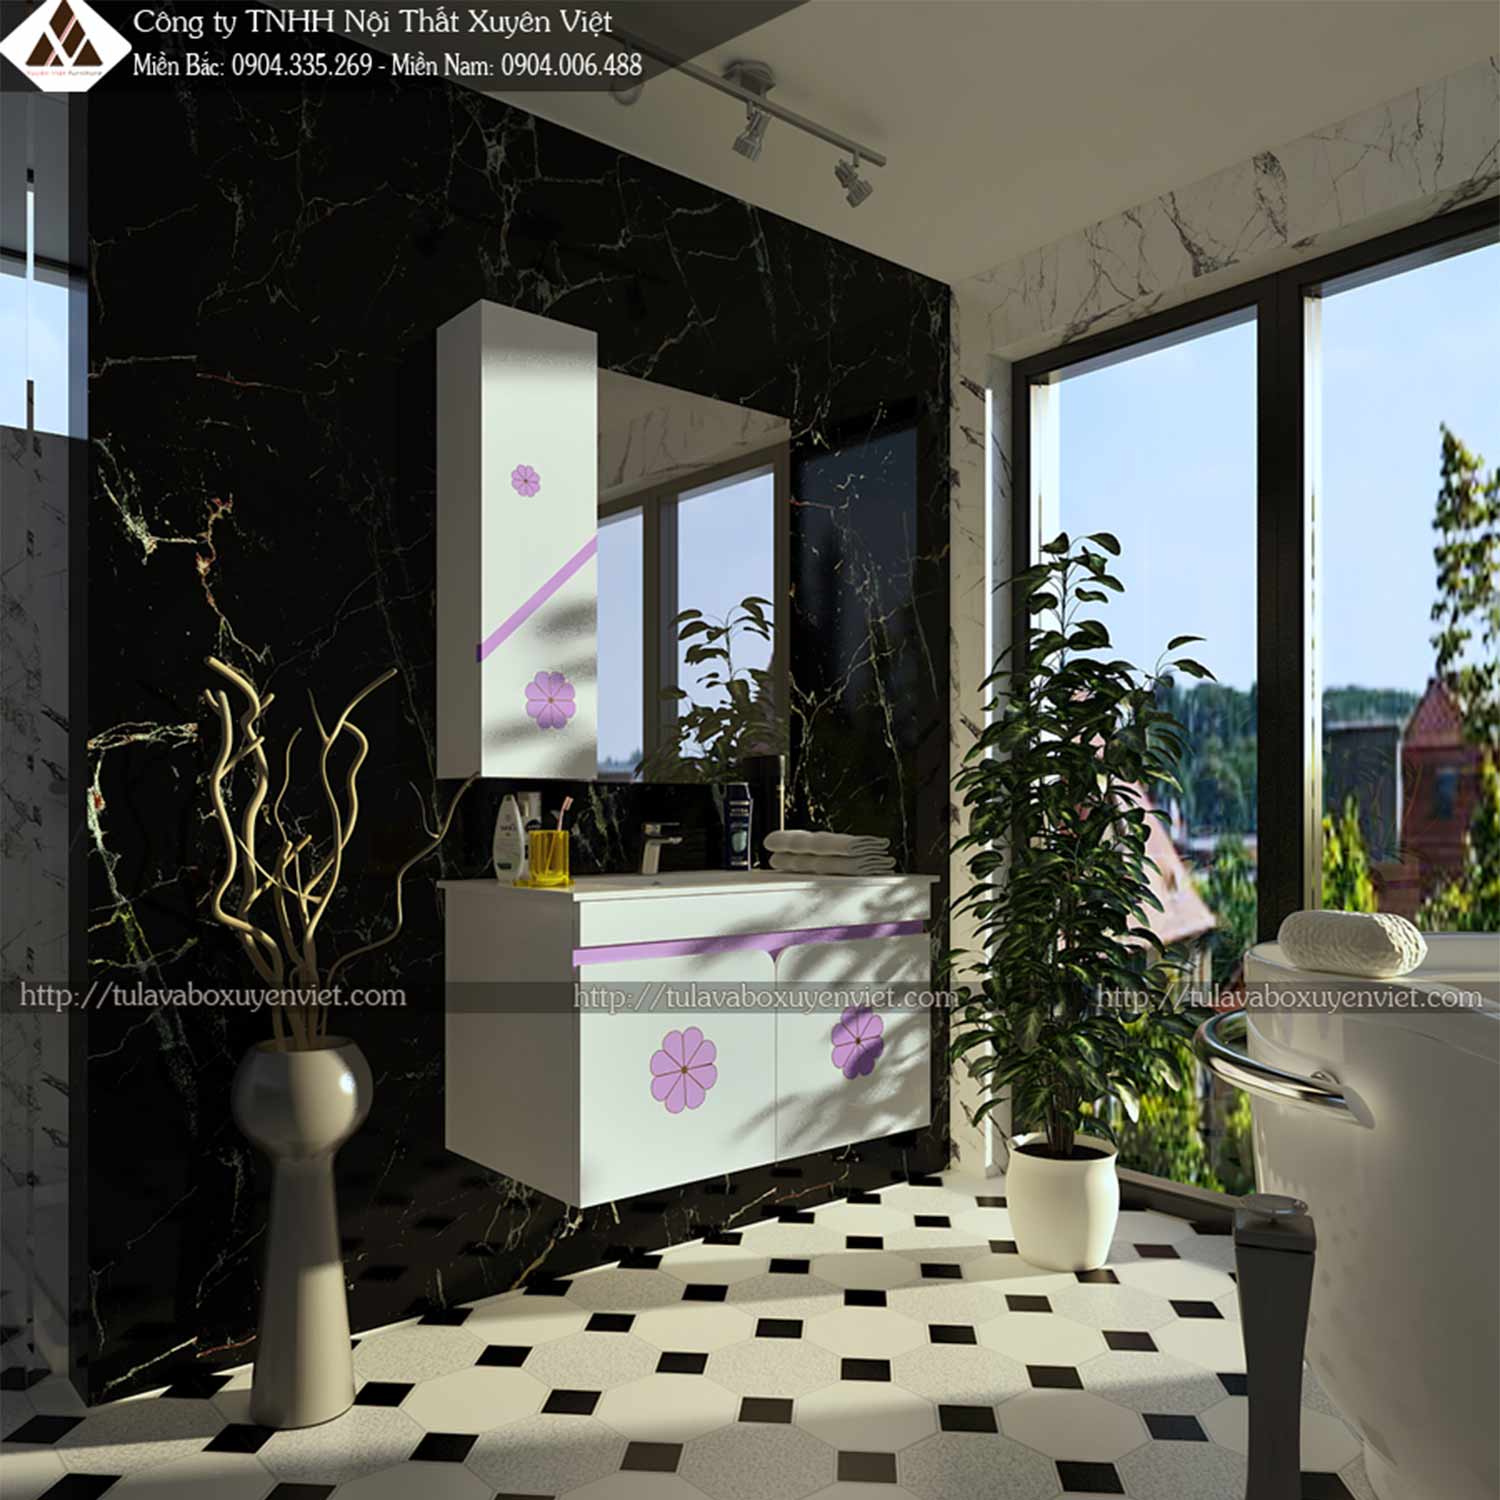 Hình ảnh bộ tủ lavabo có chậu liền bàn LBK225 kèm họa tiết xinh xắn tại Xuyên Việt